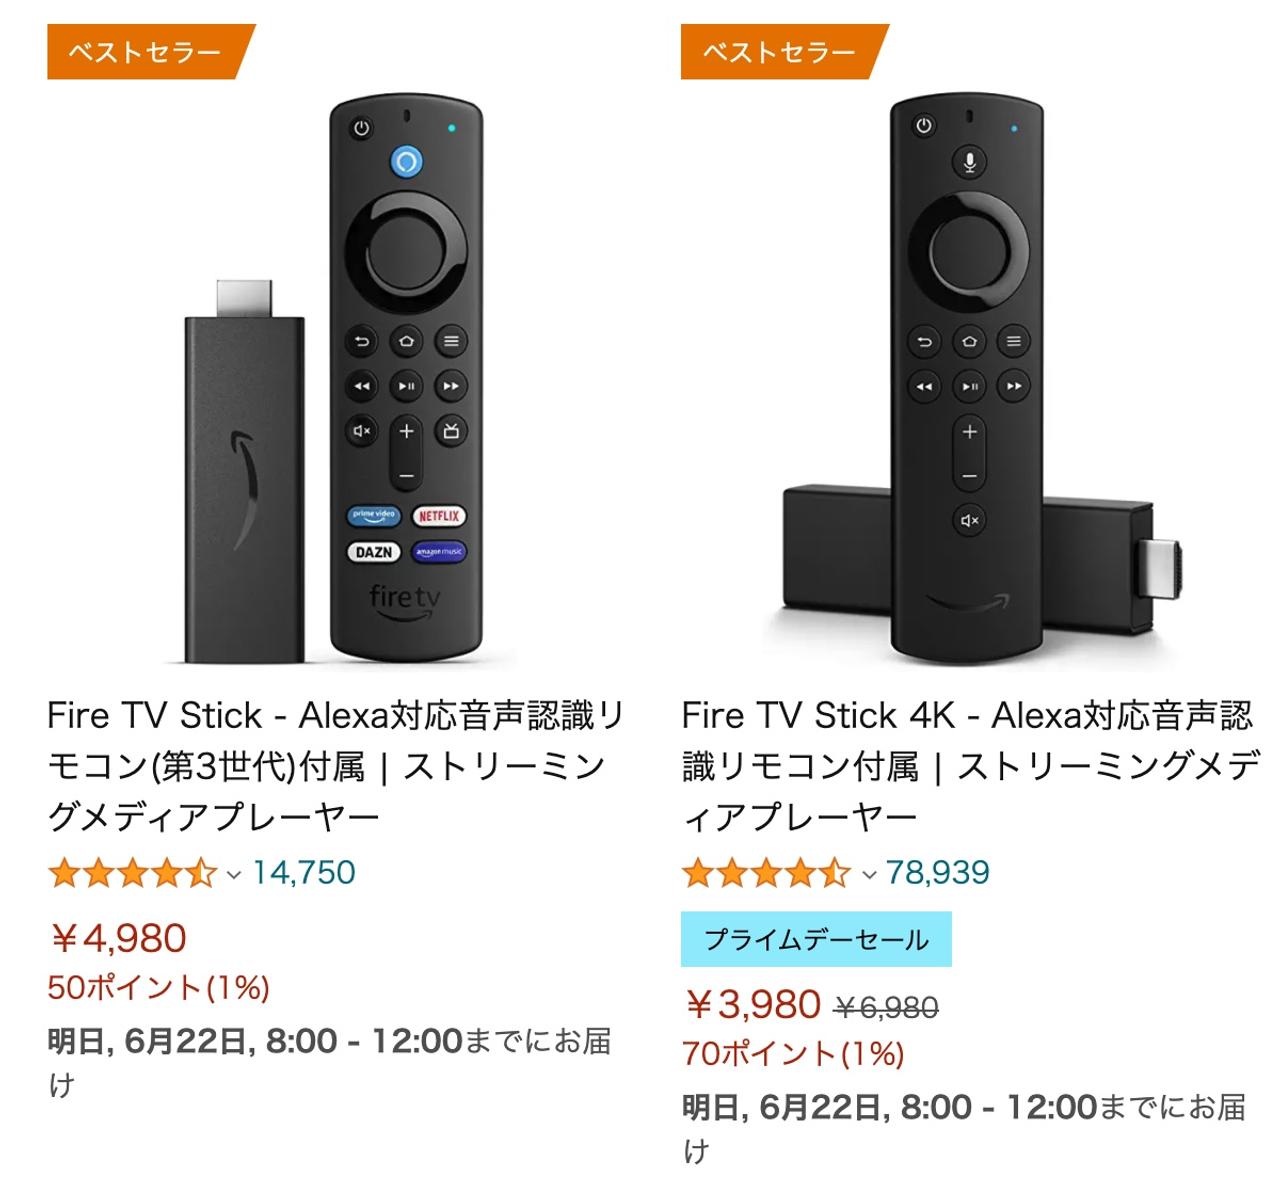 【Amazonプライムデー】どういうこった!? ｢Fire TV Stick 4K｣が43%オフで無印Fire TV Stickより安い逆転現象